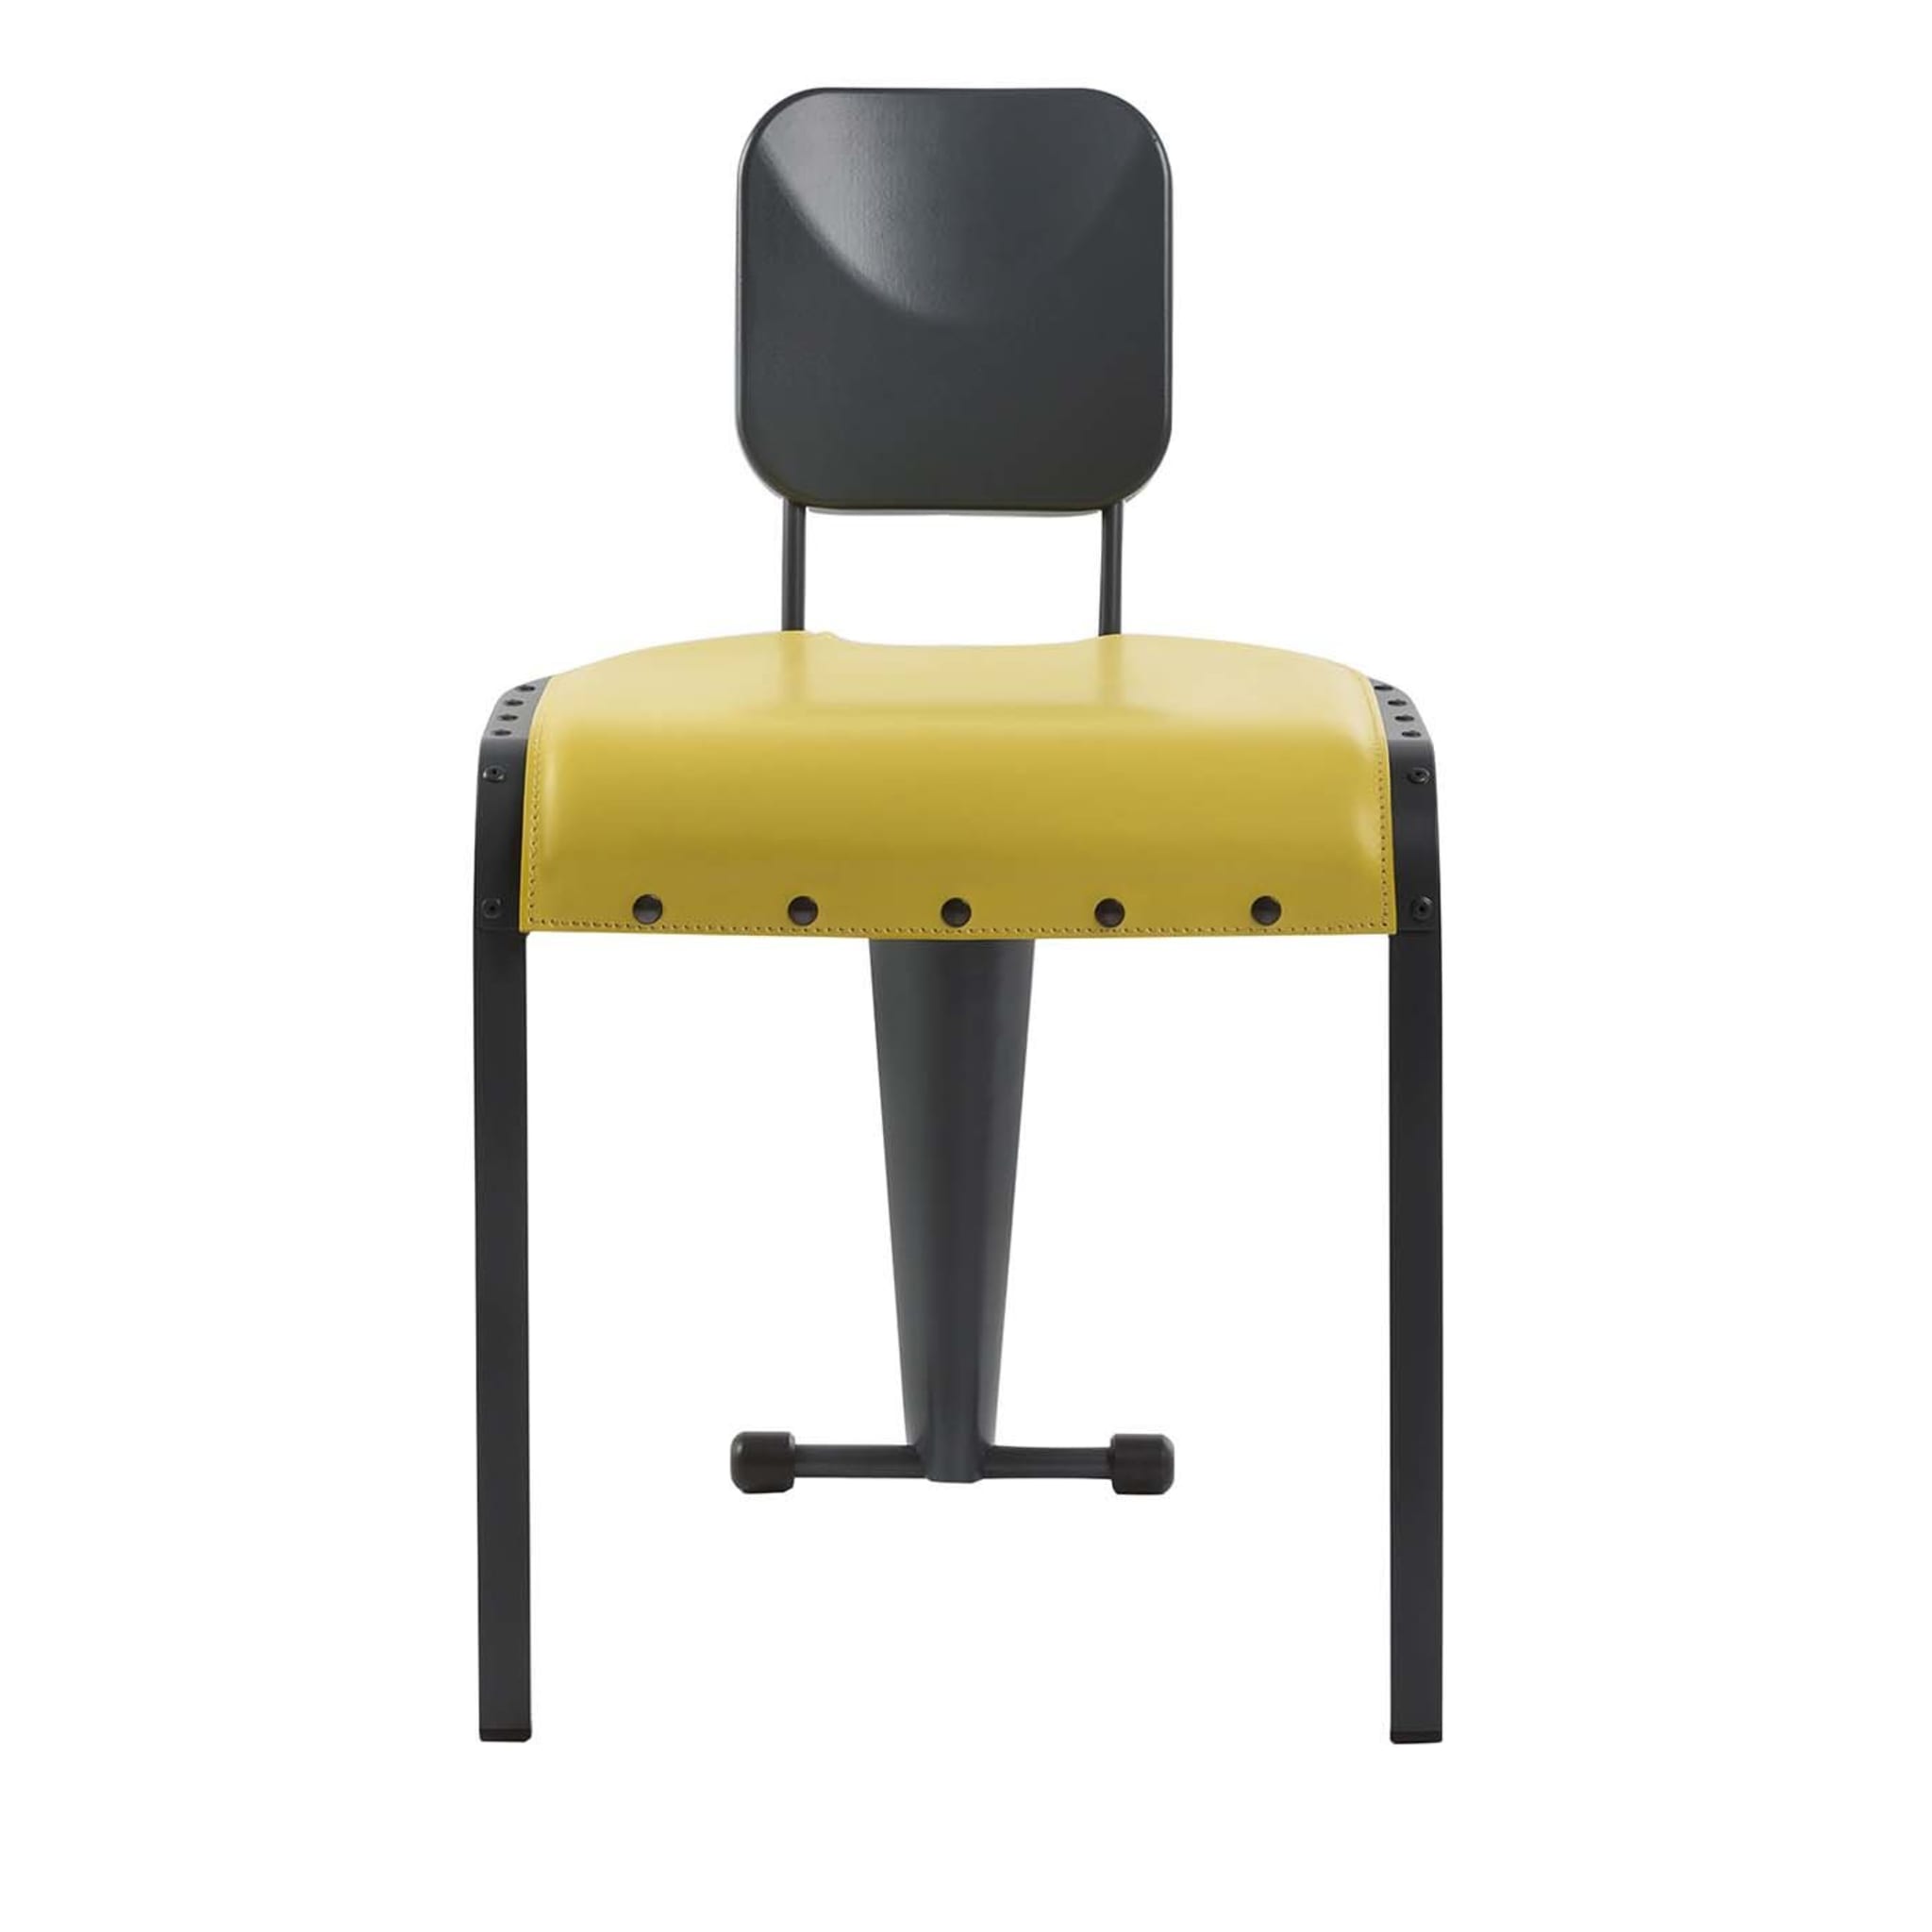 Rock chair mit gelbem ledersitz by Marc Sadler - Hauptansicht